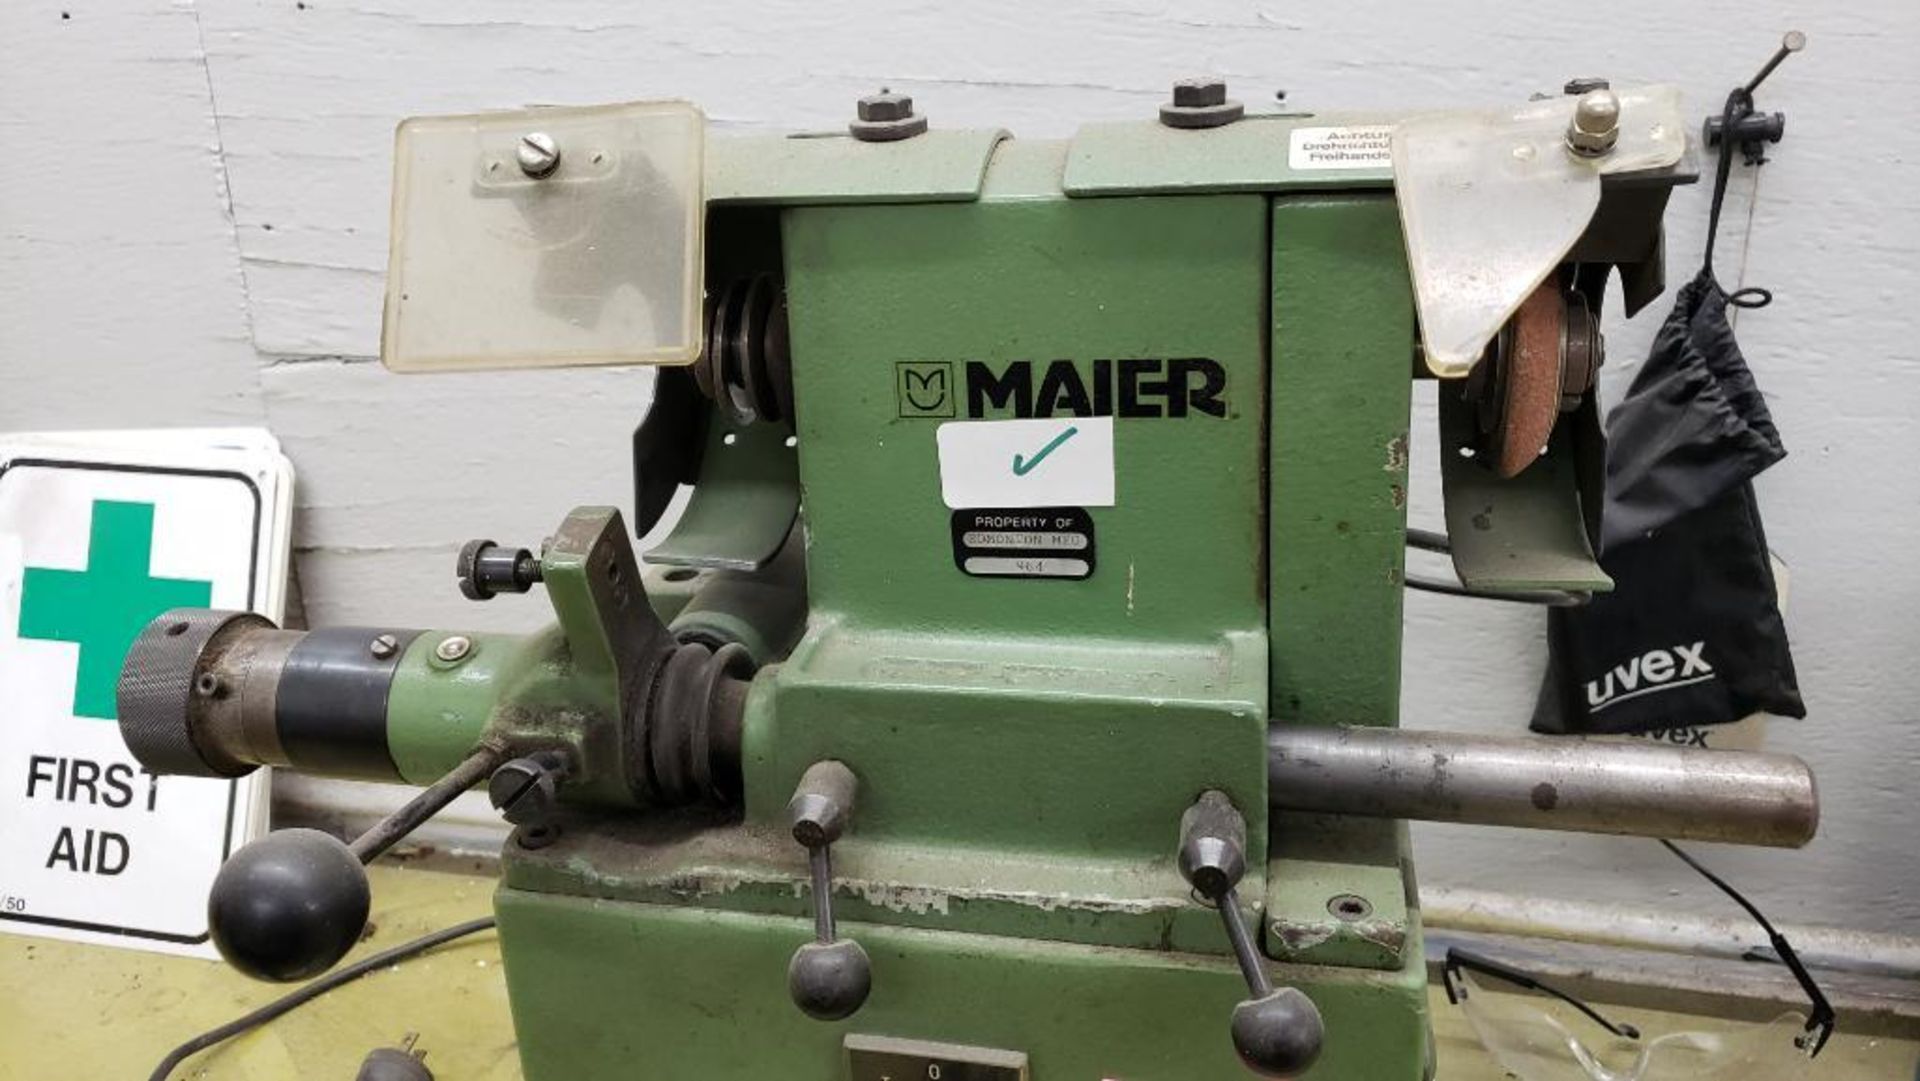 Maier scissor sharpener / grinder. 110v single phase. - Image 2 of 4